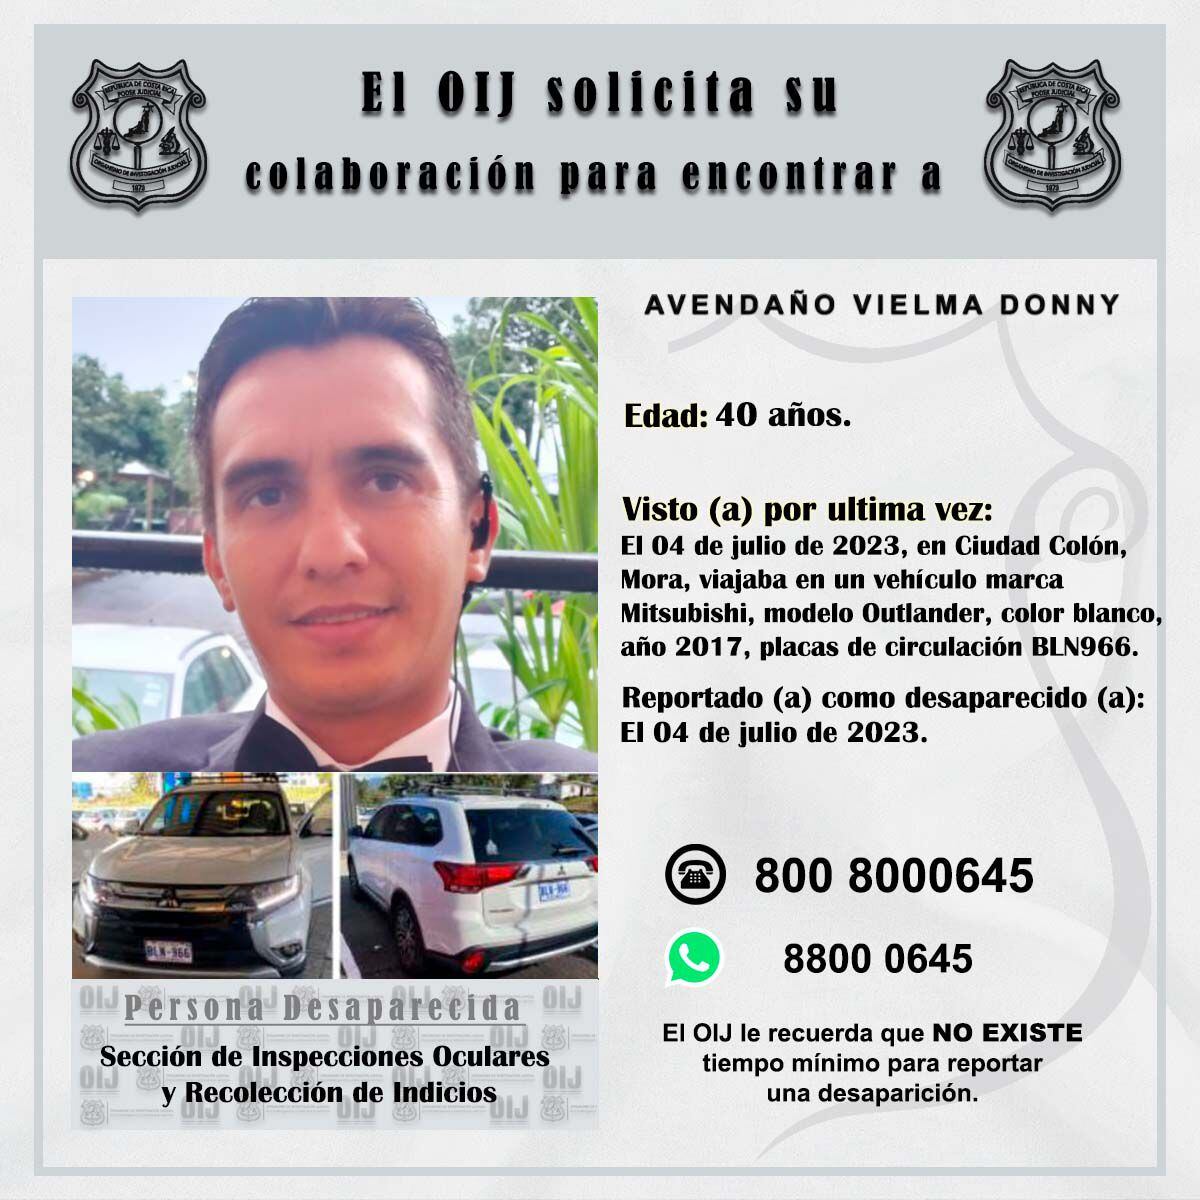 El OIJ tiene a disposición líneas confidenciales para dar información sobre Donny Avendaño. 